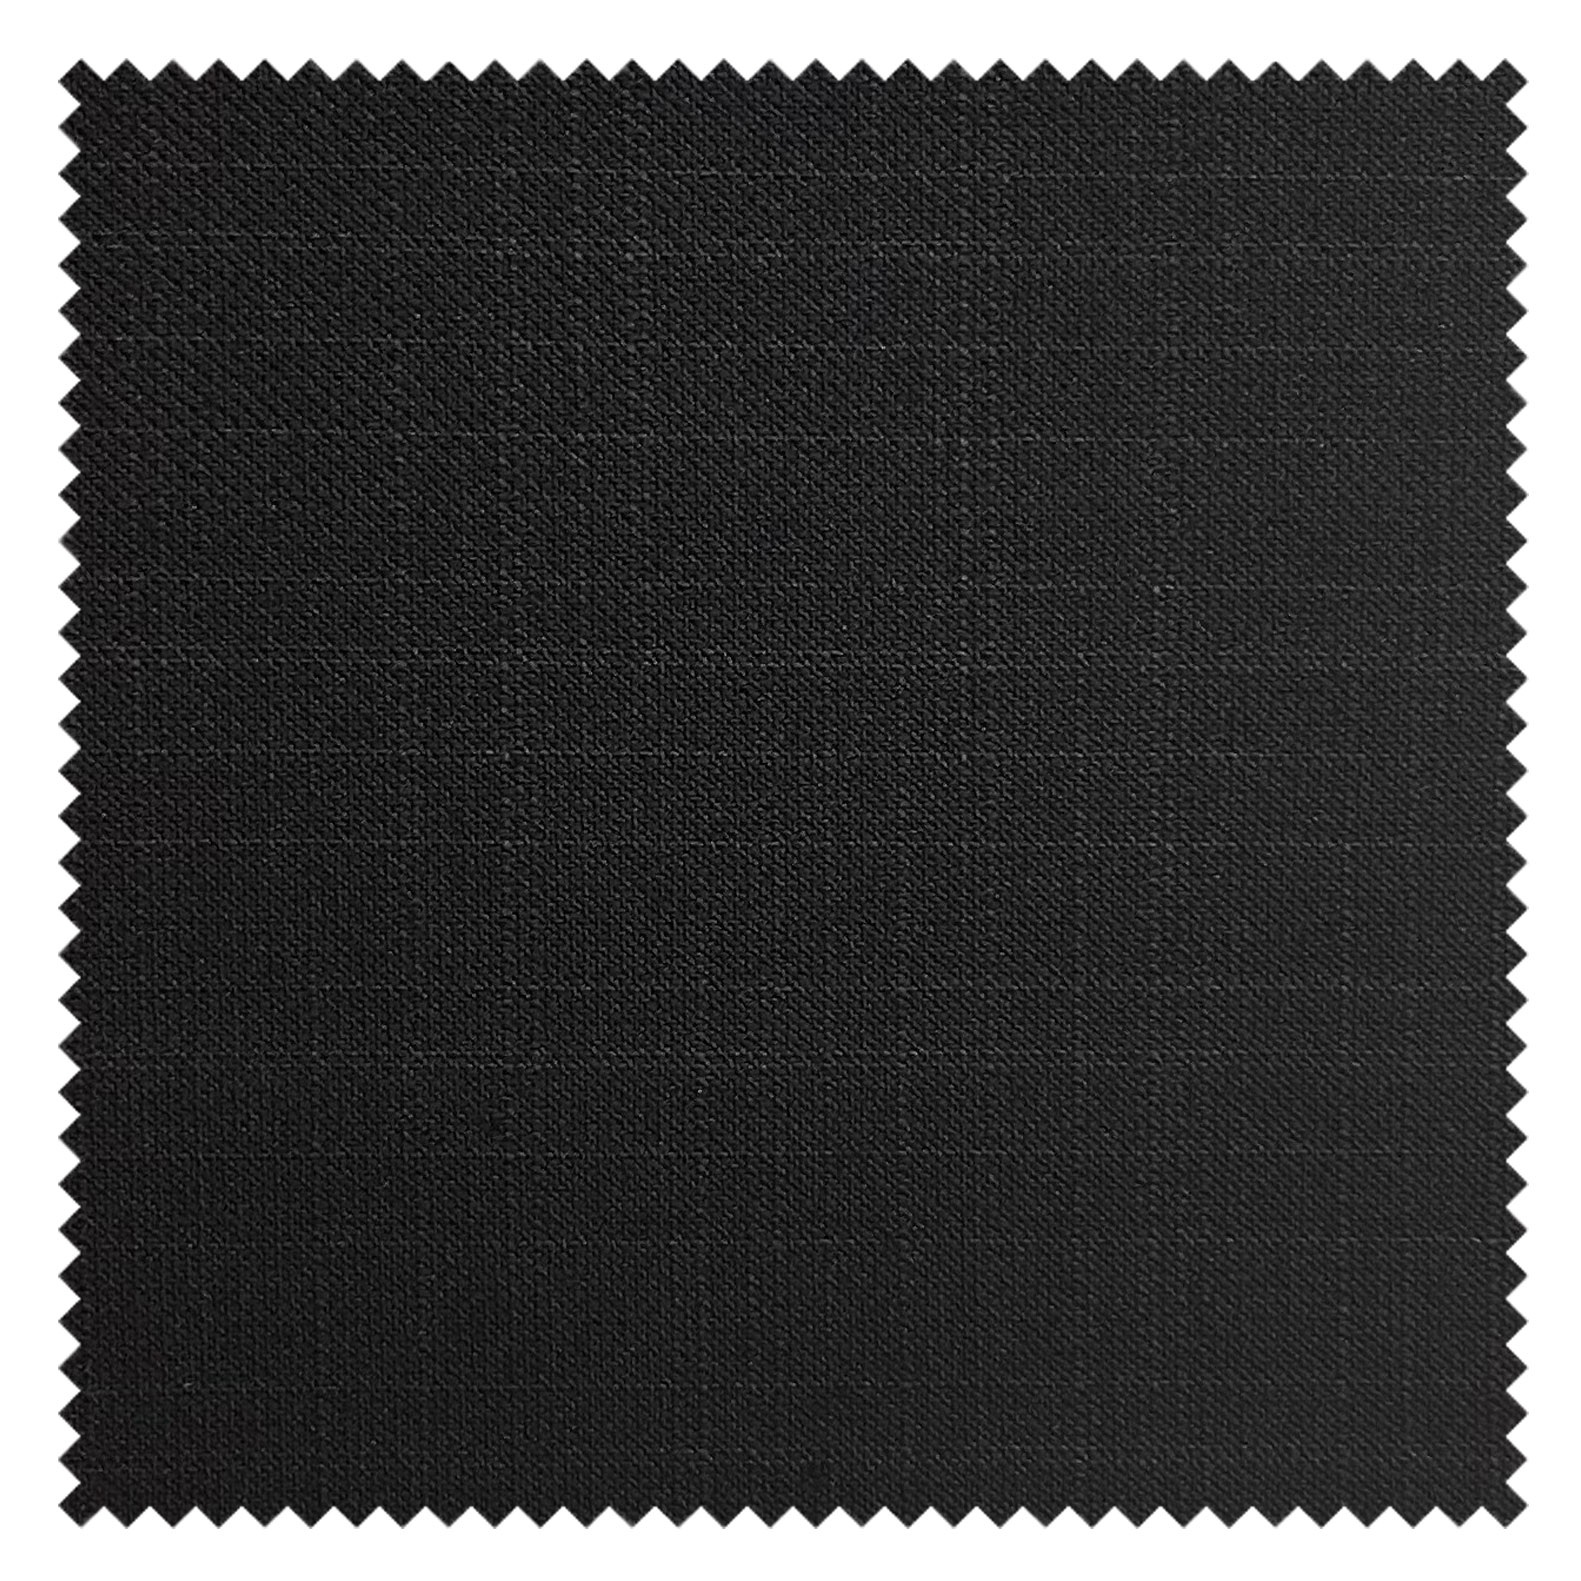 KINGMAN Cashmere Wool Fabric Super Sharkskin BLACK ผ้าตัดชุดสูท สีดำ กางเกง ผู้ชาย ผ้าตัดเสื้อ ยูนิฟอร์ม ผ้าวูล ผ้าคุณภาพดี กว้าง 60 นิ้ว ยาว 1 เมตร